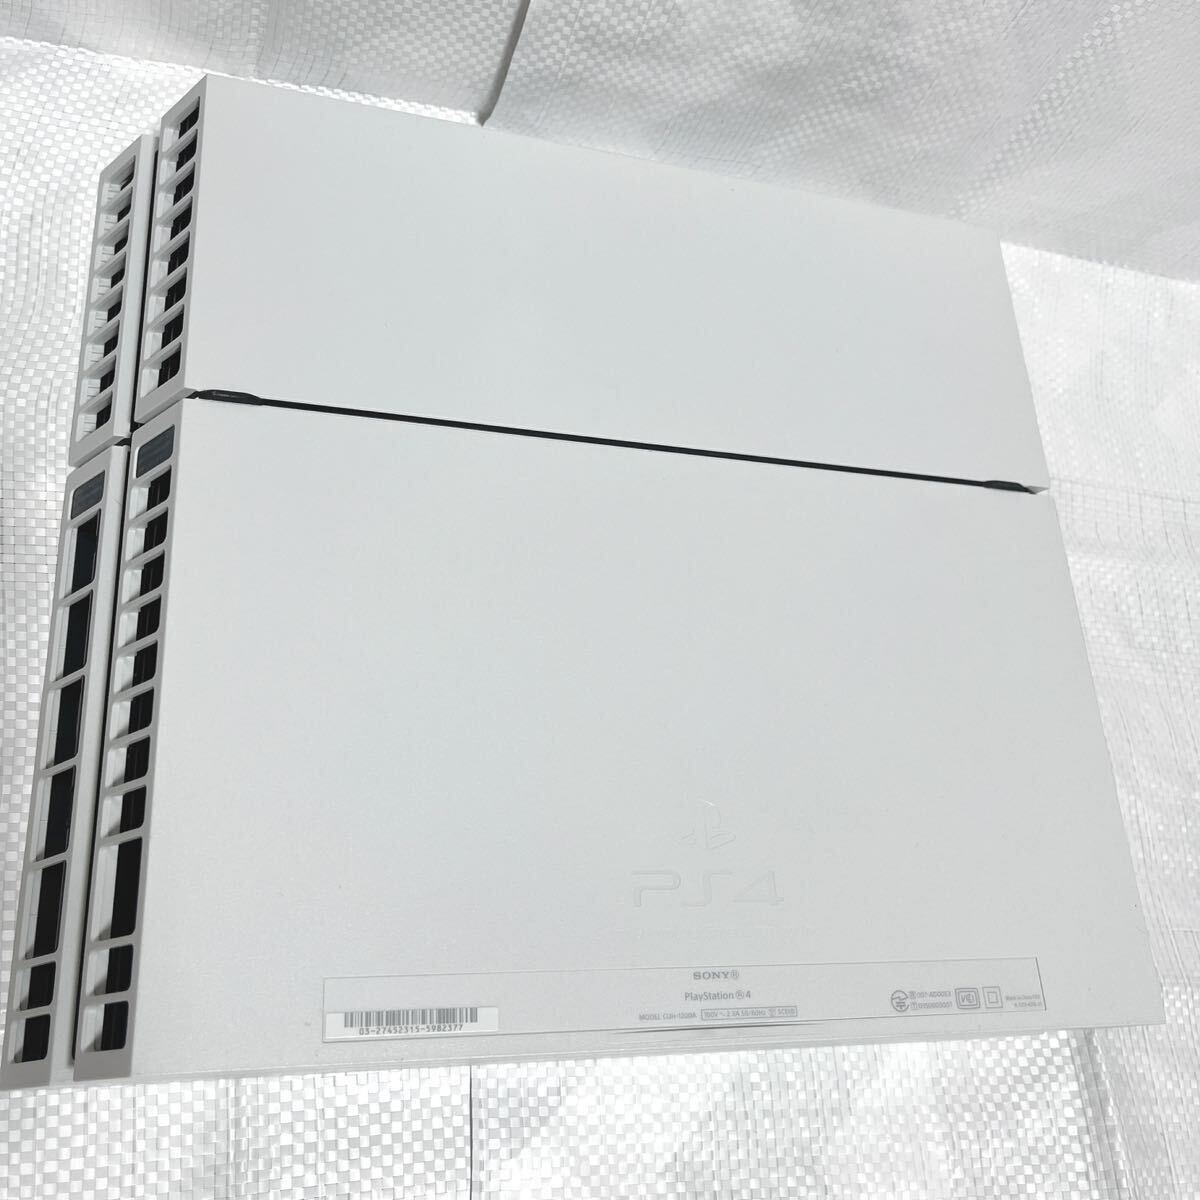 ソニーSONY /PlayStation4 CUH-1200A /ホワイト/本体_画像8